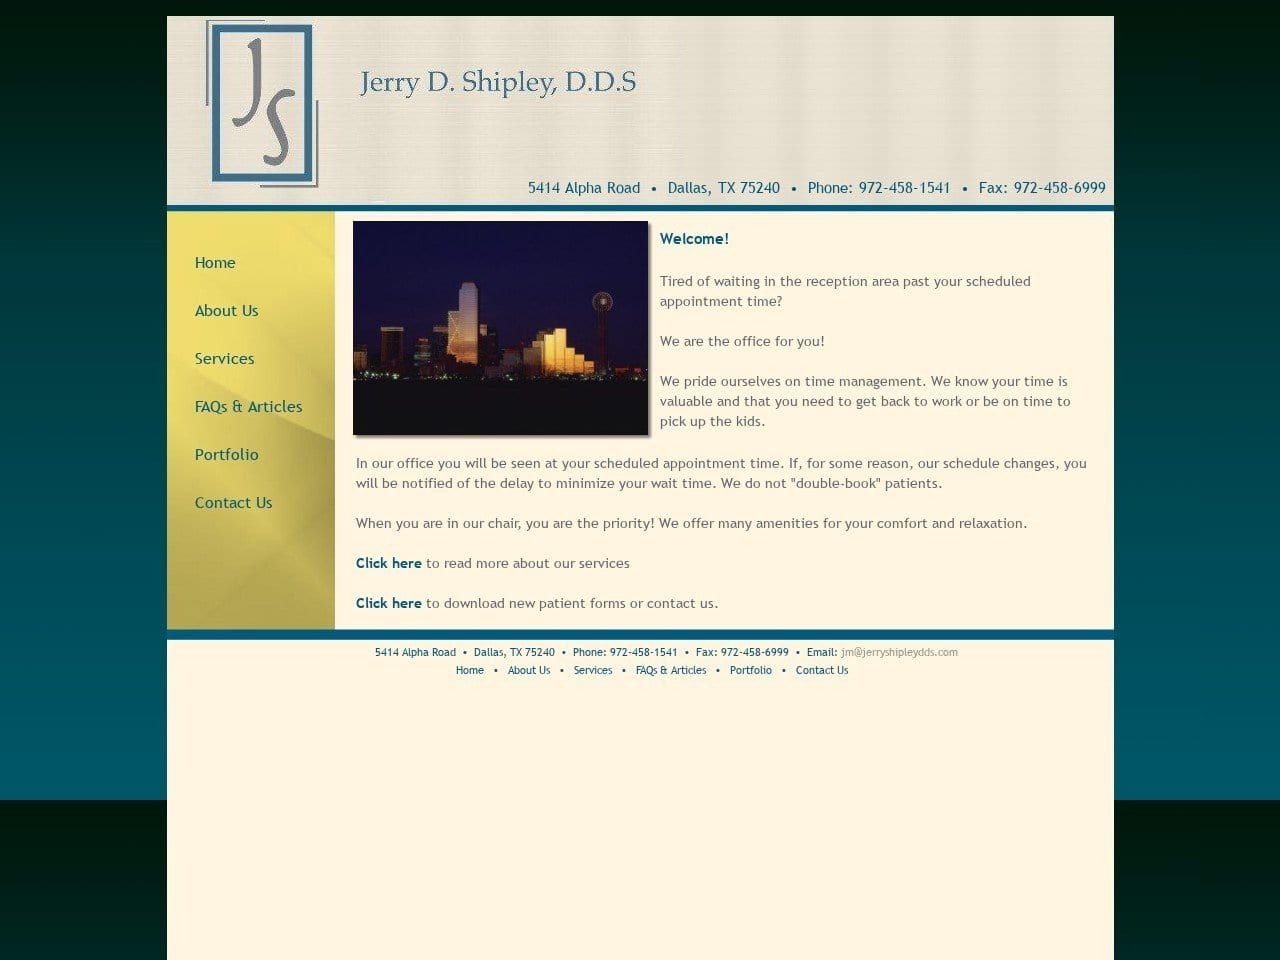 Dr. Jerry D. Shipley DDS Website Screenshot from valleyviewdental.com